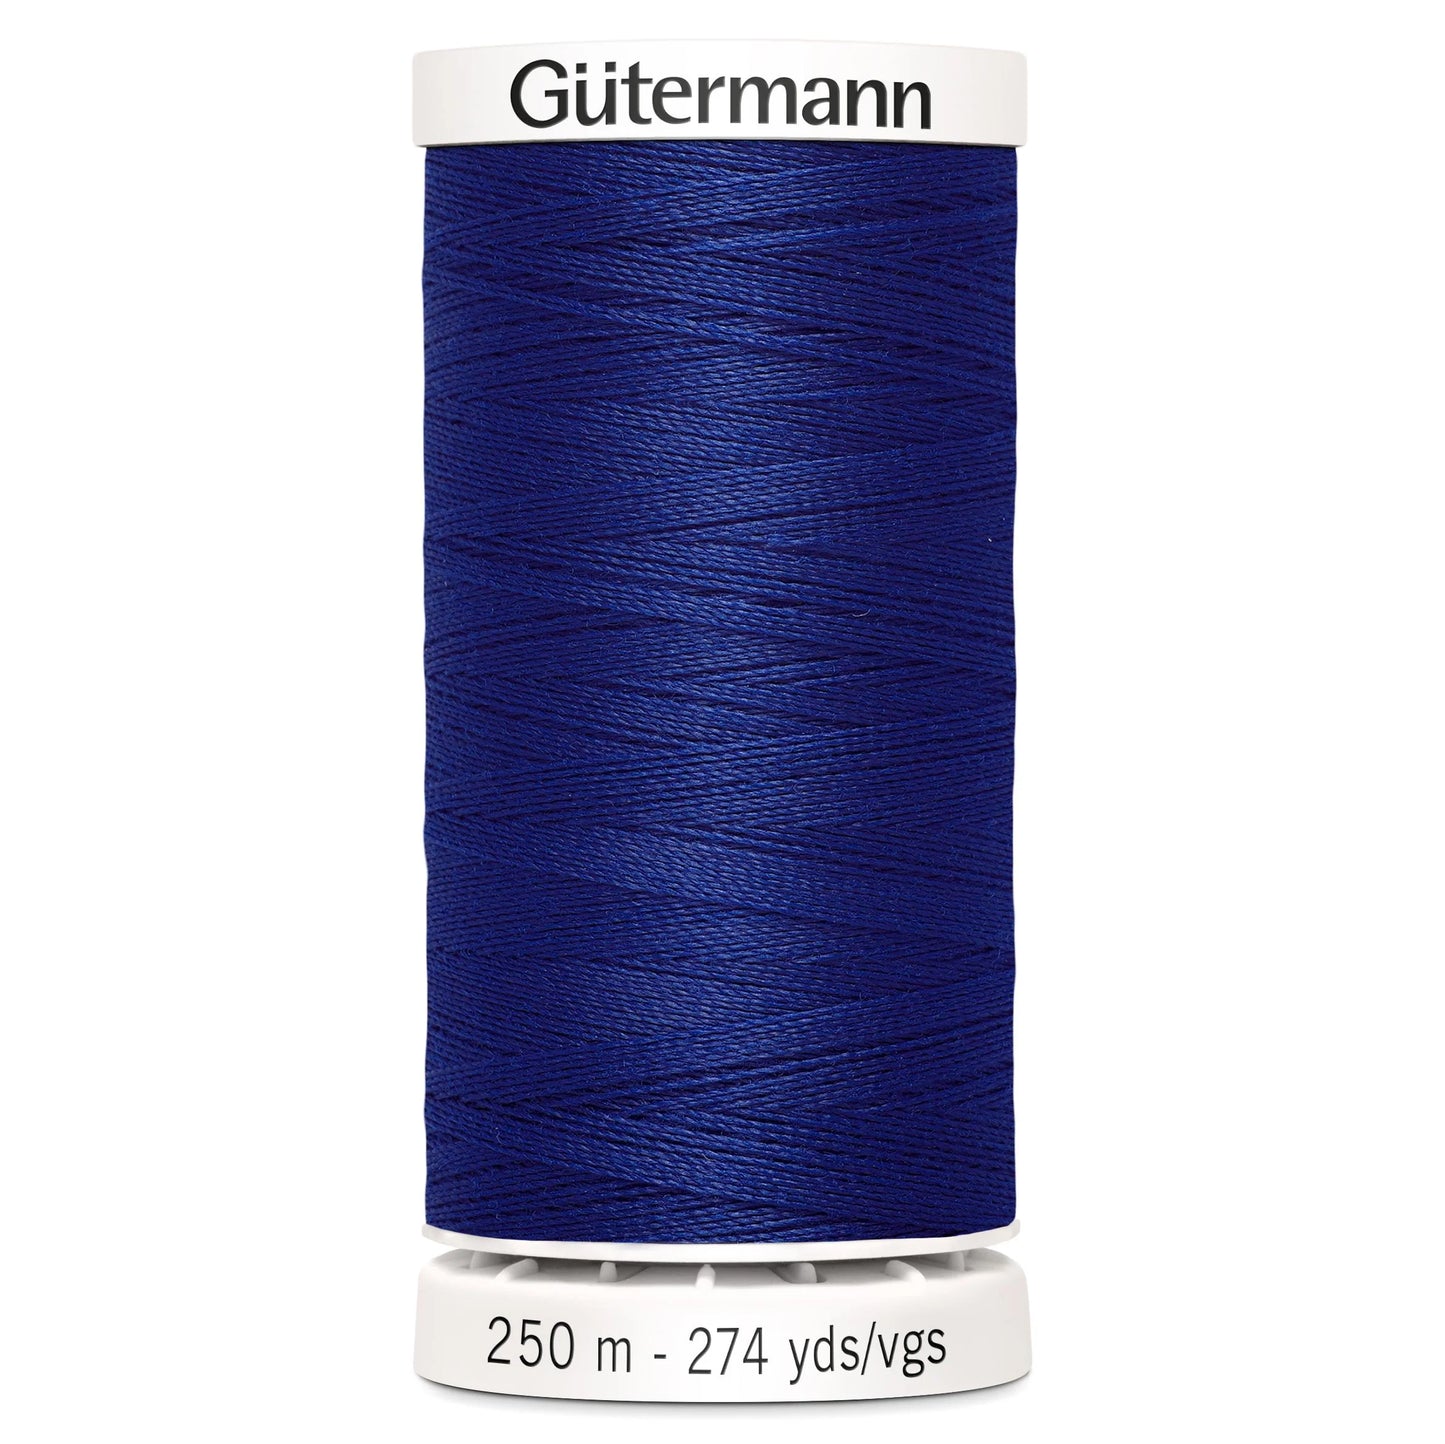 232 Gutermann Sew All 250m - Cobalt Blue